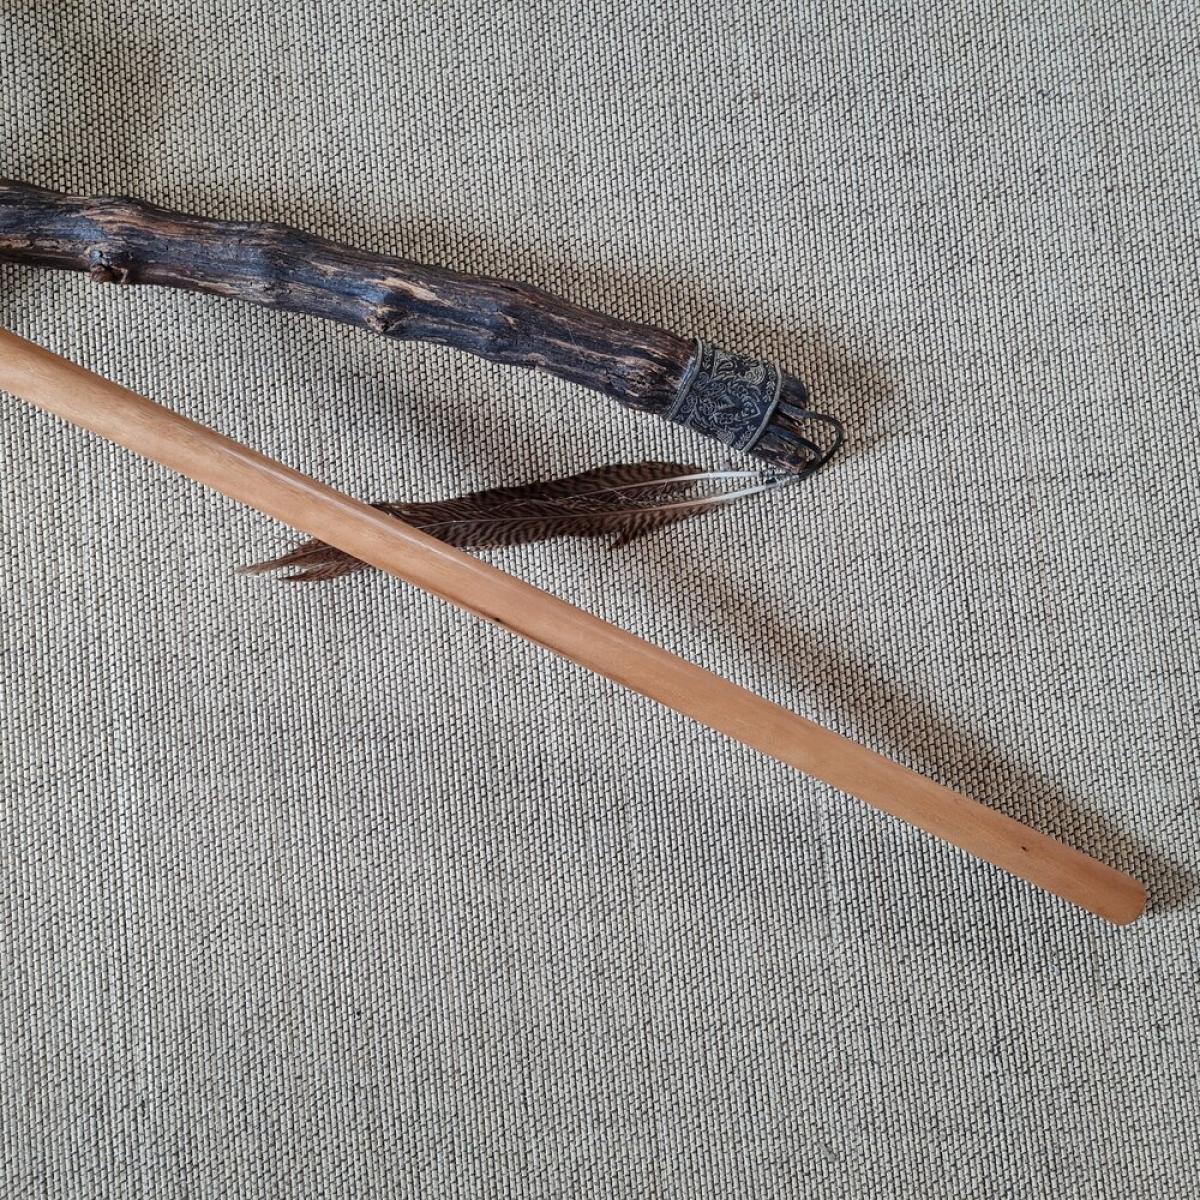 Jo stick made of Ghio wood - length 135 cm ➤ www.bokken-shop.de. Suitable for Aikido, Iaido, Jo-Jutsu, Jodo, Bujinkan. Your Budo dealer!